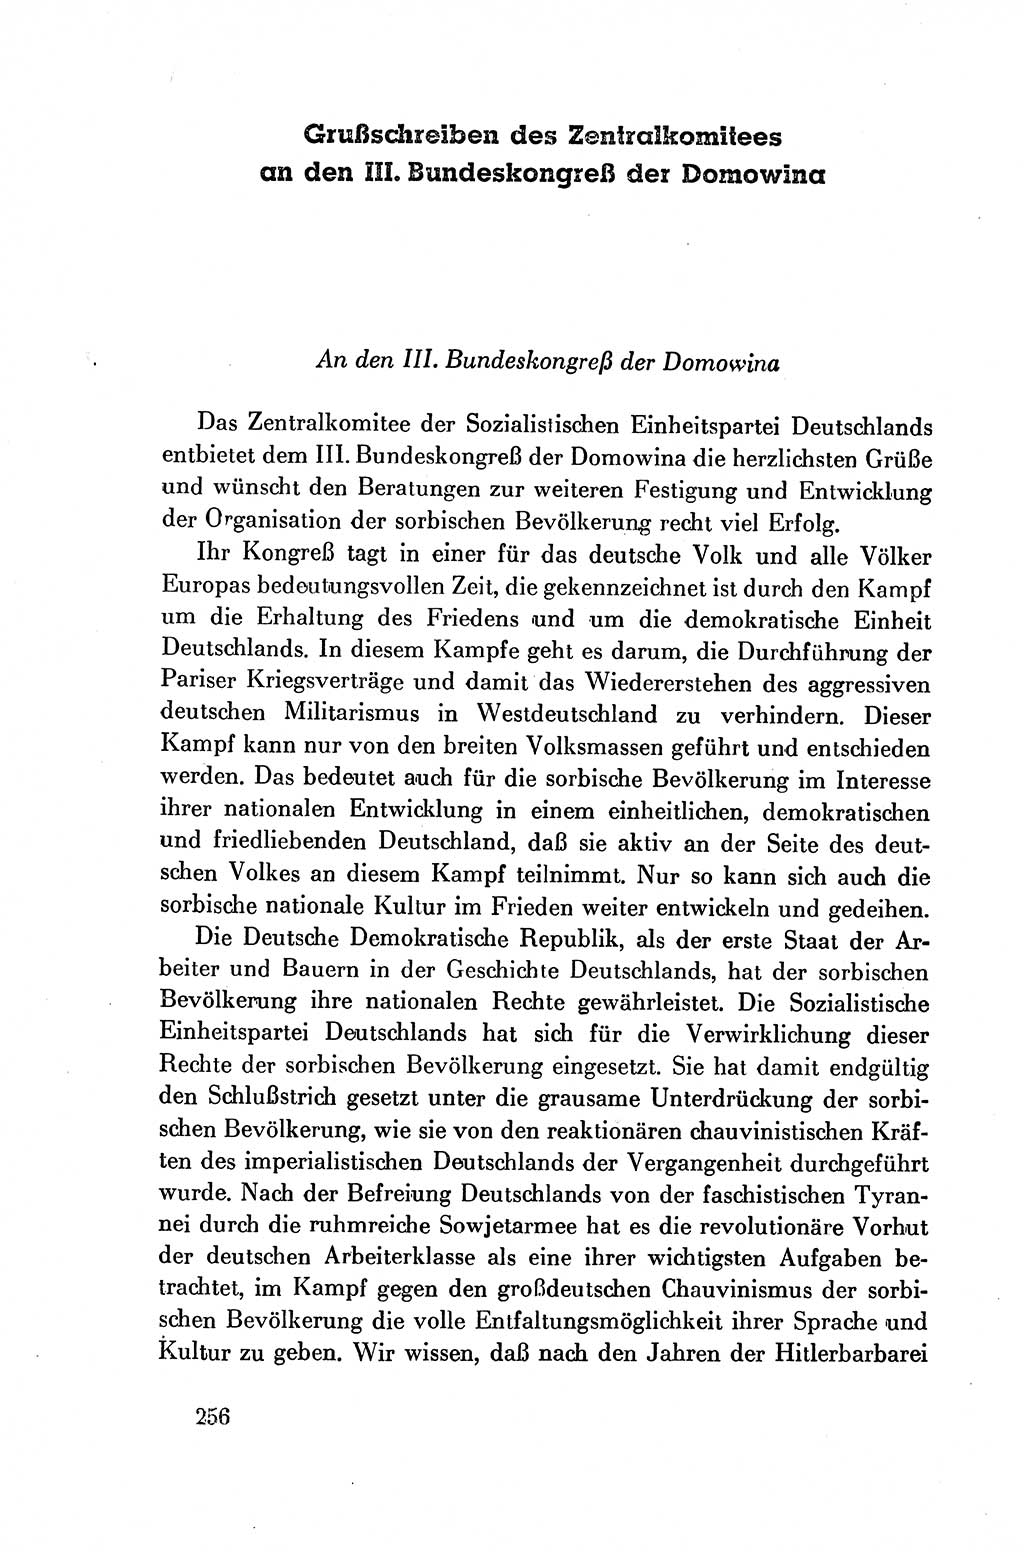 Dokumente der Sozialistischen Einheitspartei Deutschlands (SED) [Deutsche Demokratische Republik (DDR)] 1954-1955, Seite 256 (Dok. SED DDR 1954-1955, S. 256)